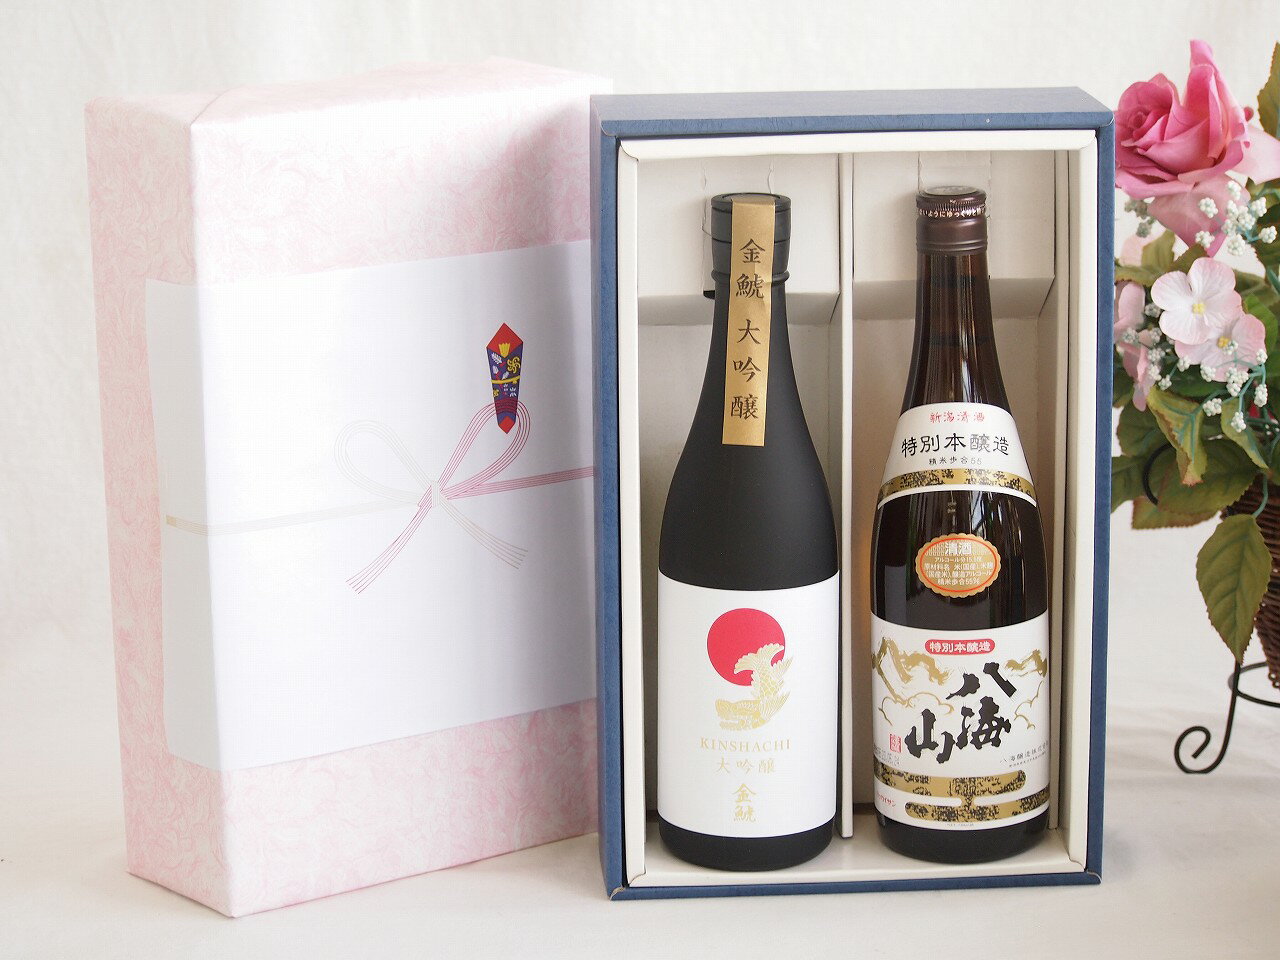 贅沢な日本酒感謝ボックス2本セット(金鯱大吟醸(愛知) 八海山特別本醸造(新潟)) 720ml×2本